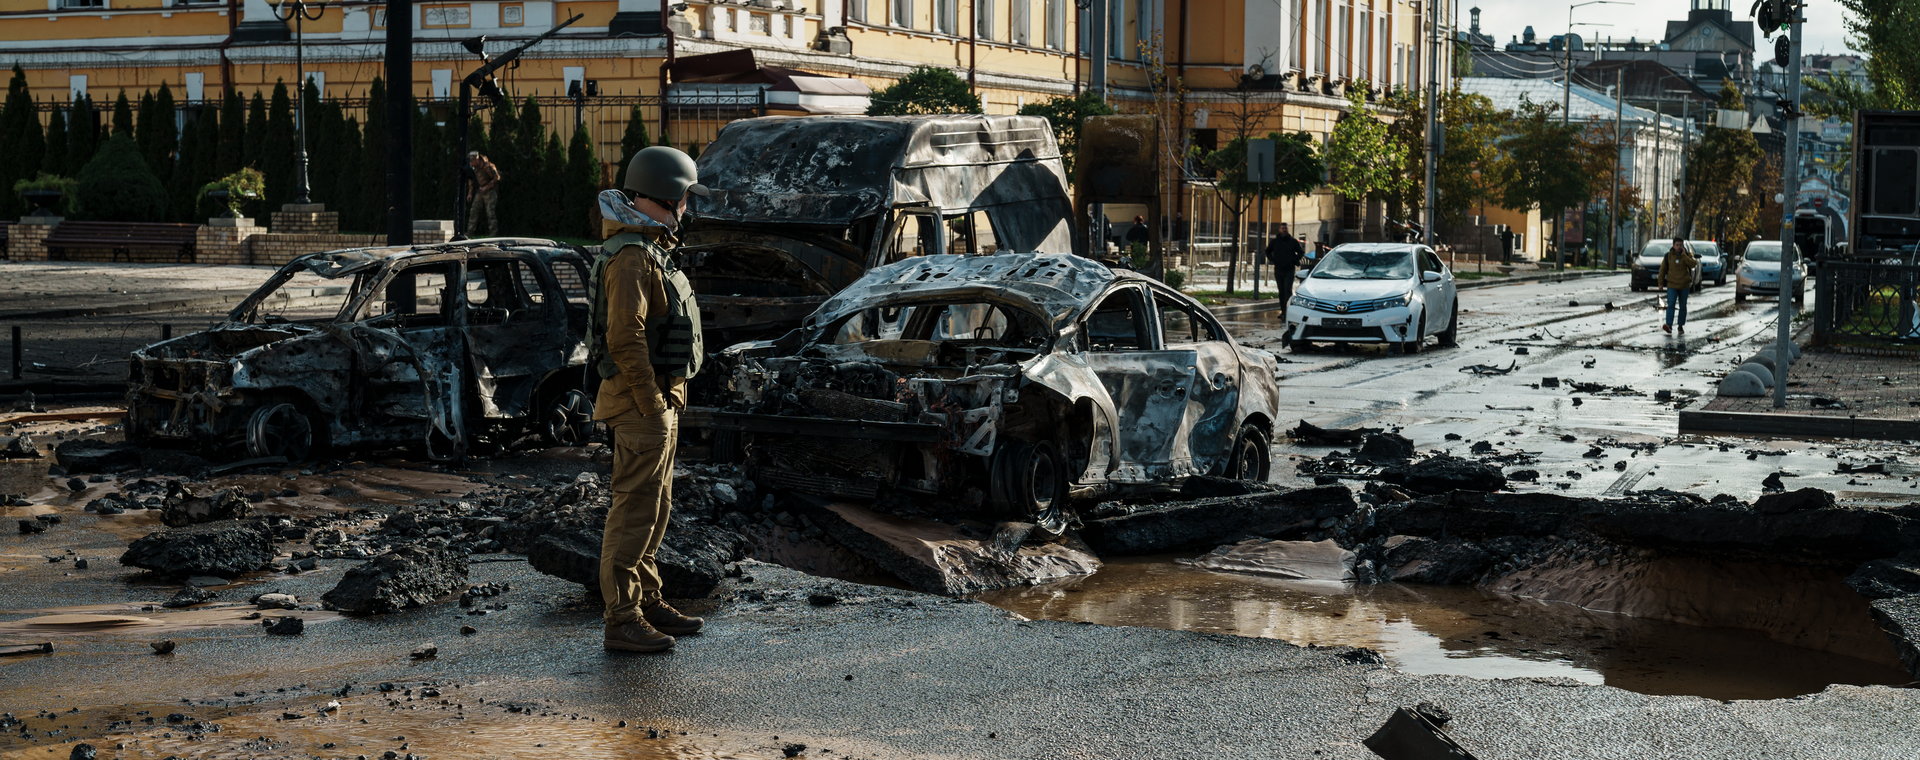 Krater po rosyjskim pocisku i wraki pojazdów zniszczonych przez ostrzał w Kijowie w Ukrainie. 10 października 2022 r. 